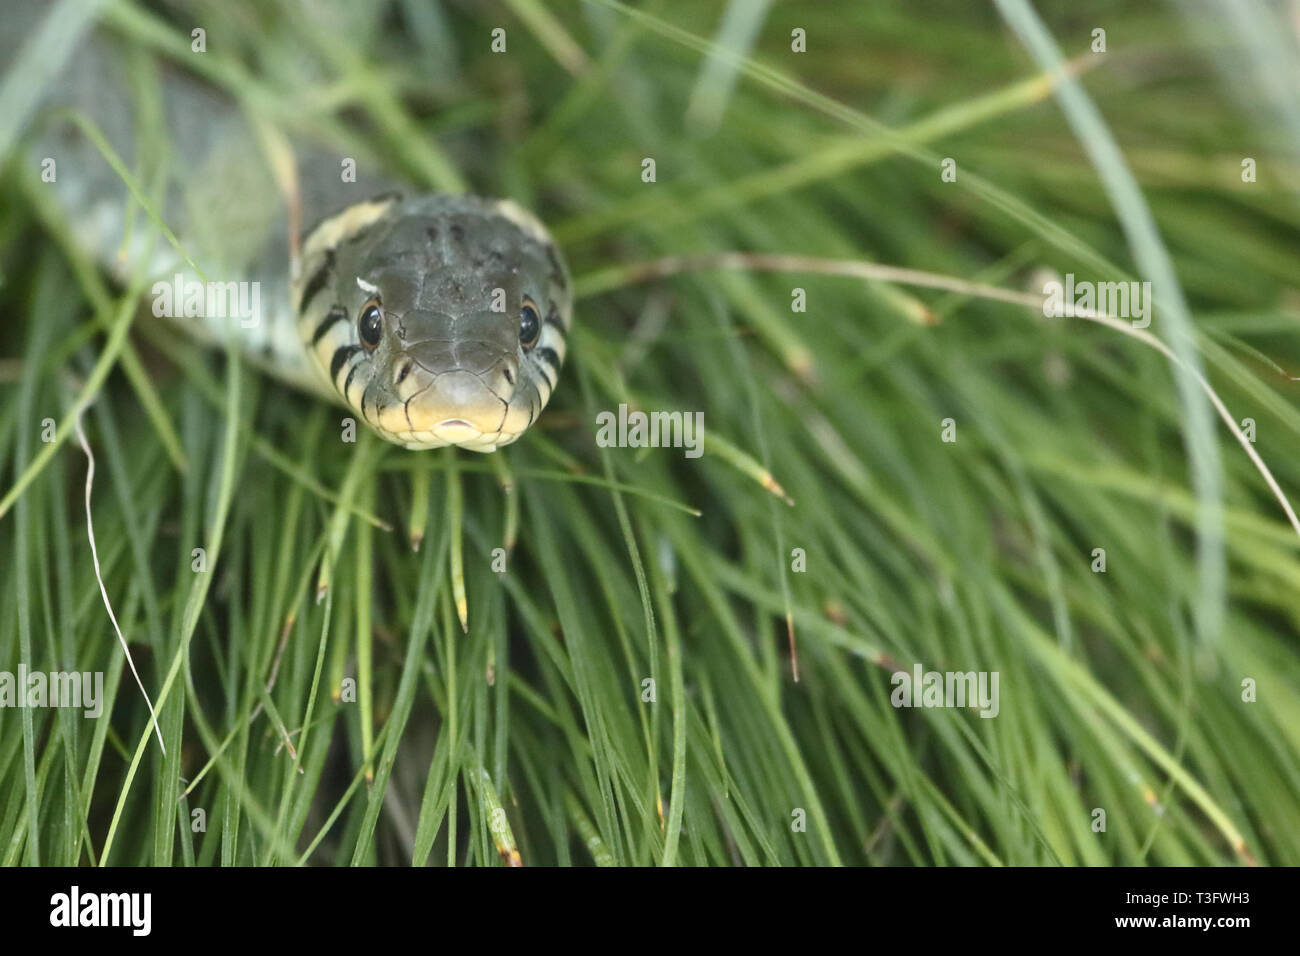 Ringelnatter / Grass snake / Natrix natrix Stock Photo